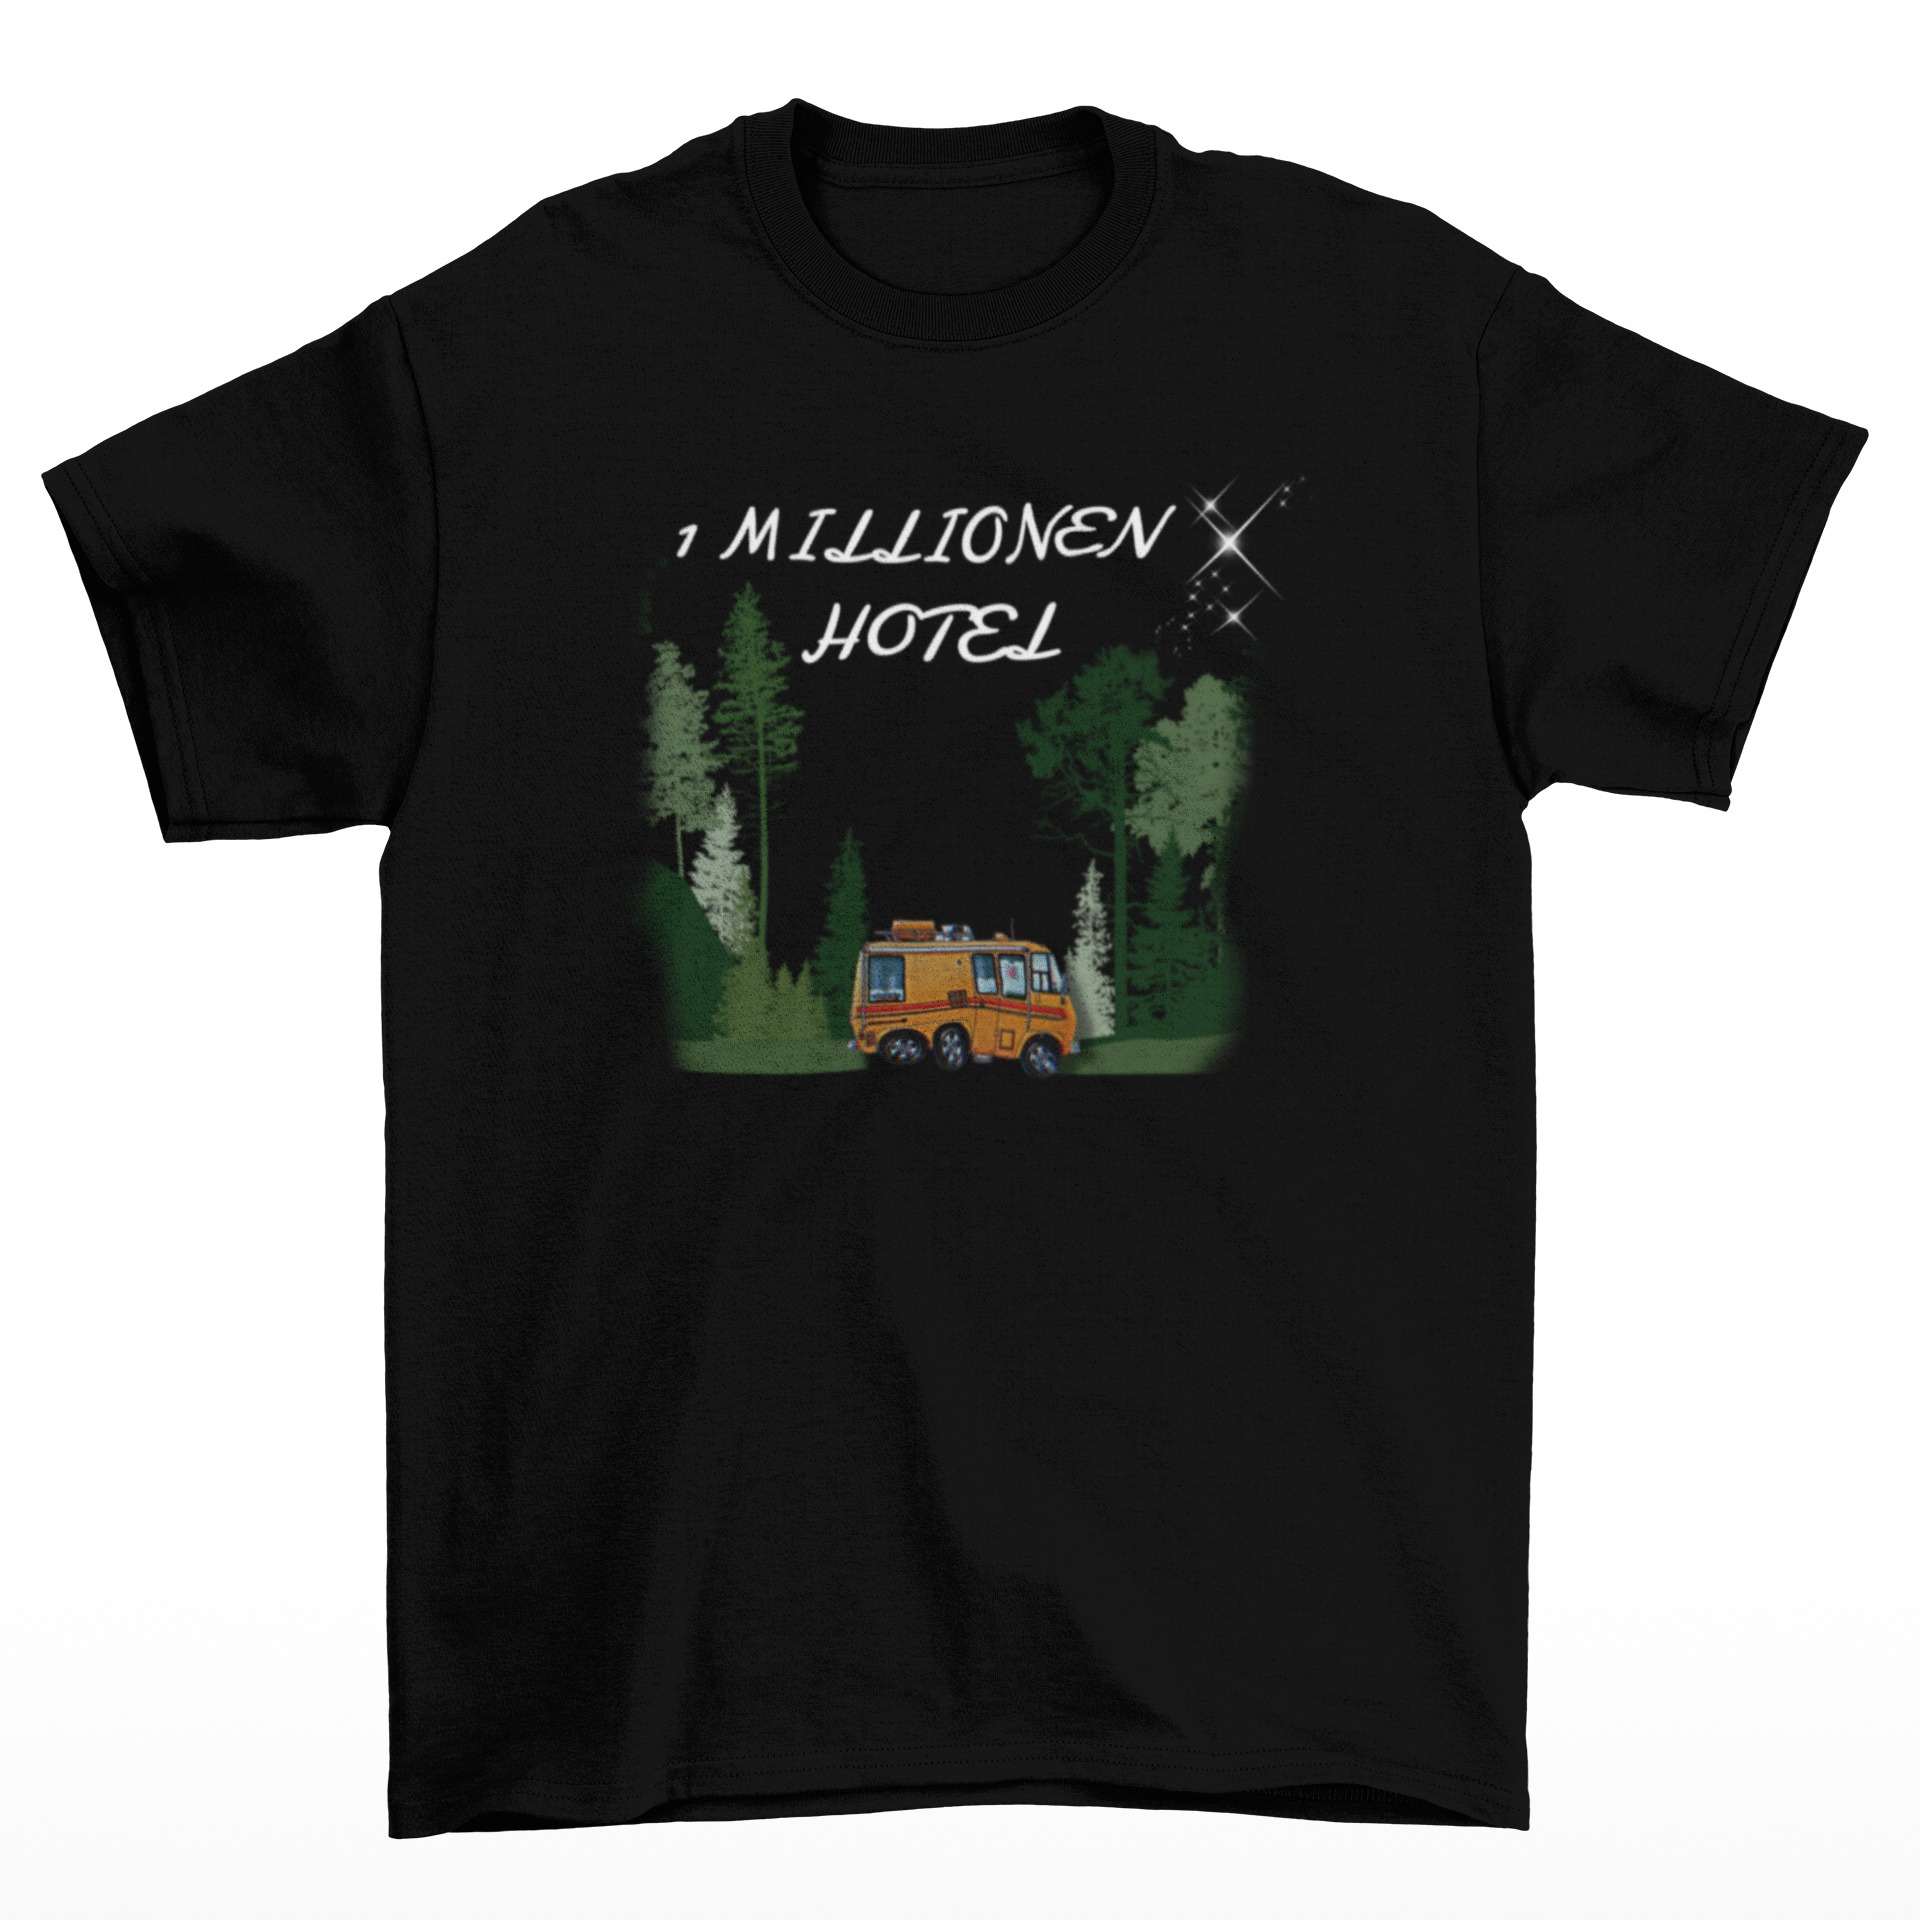 1 Mio Sterne Hotel  - Herren Shirt